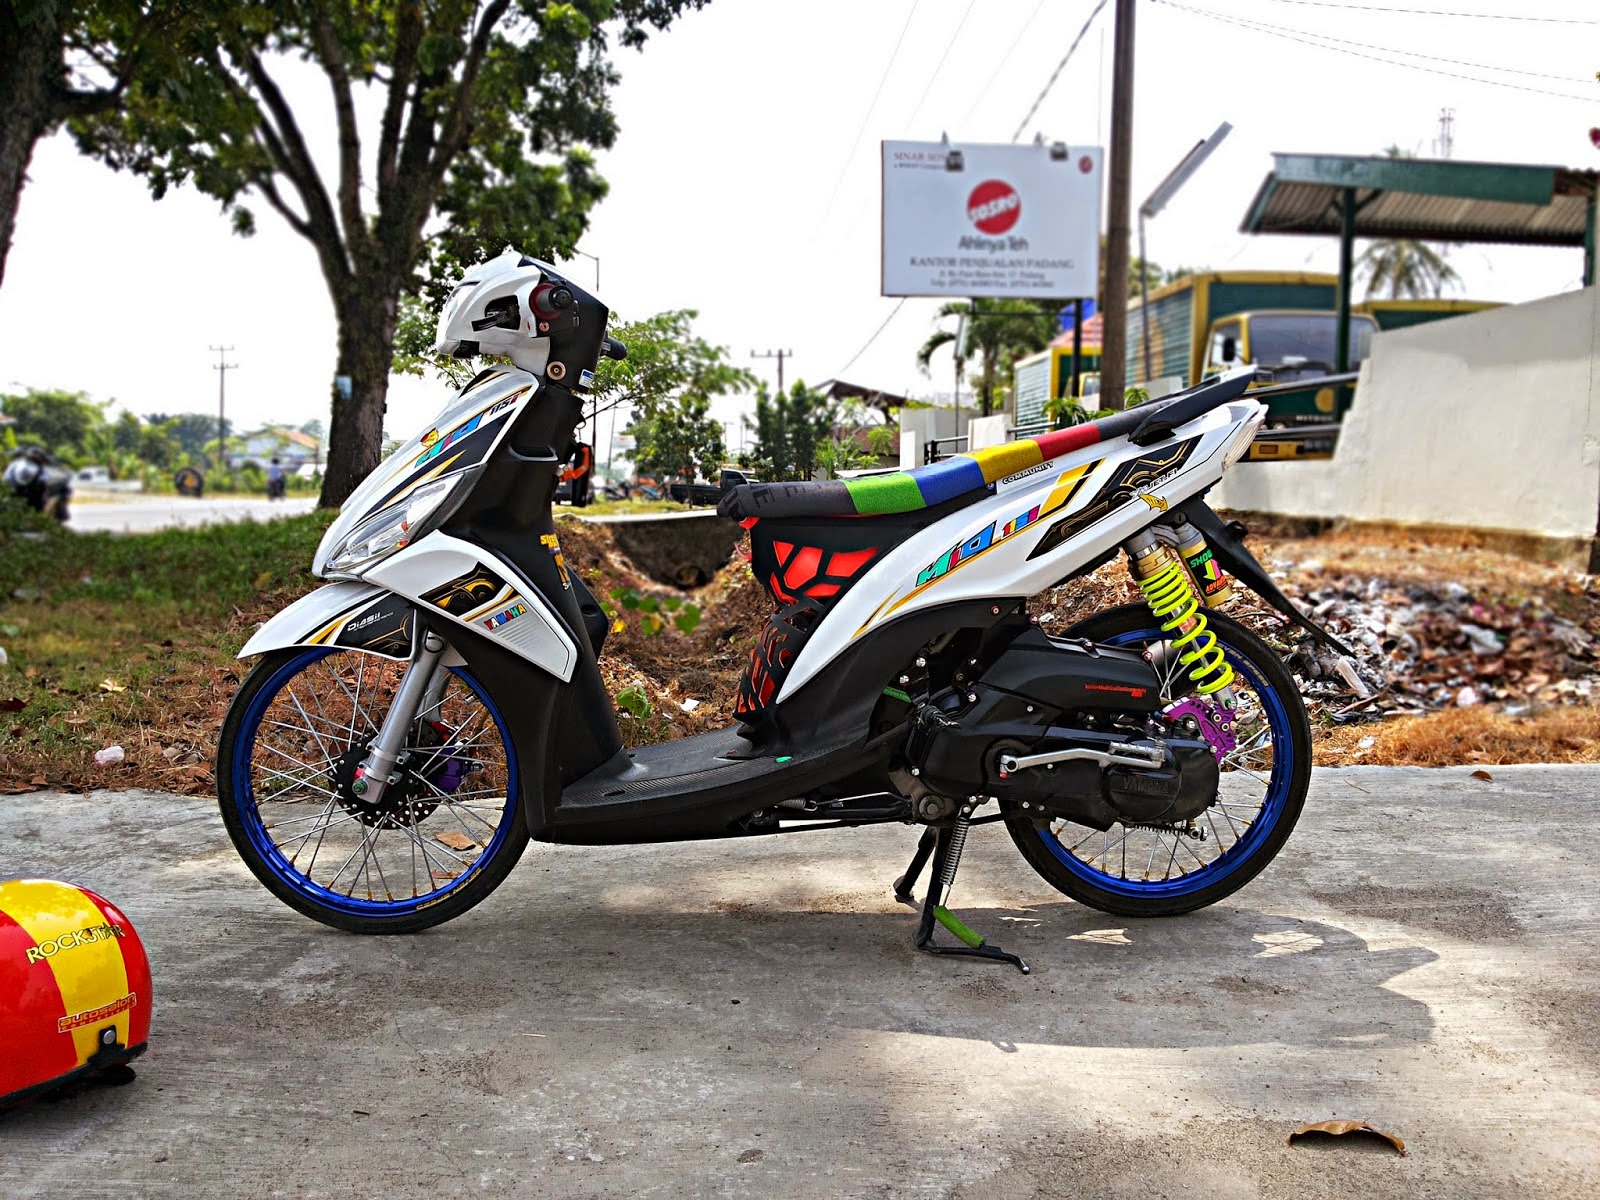  Mio J Modifikasi Thailand Thecitycyclist